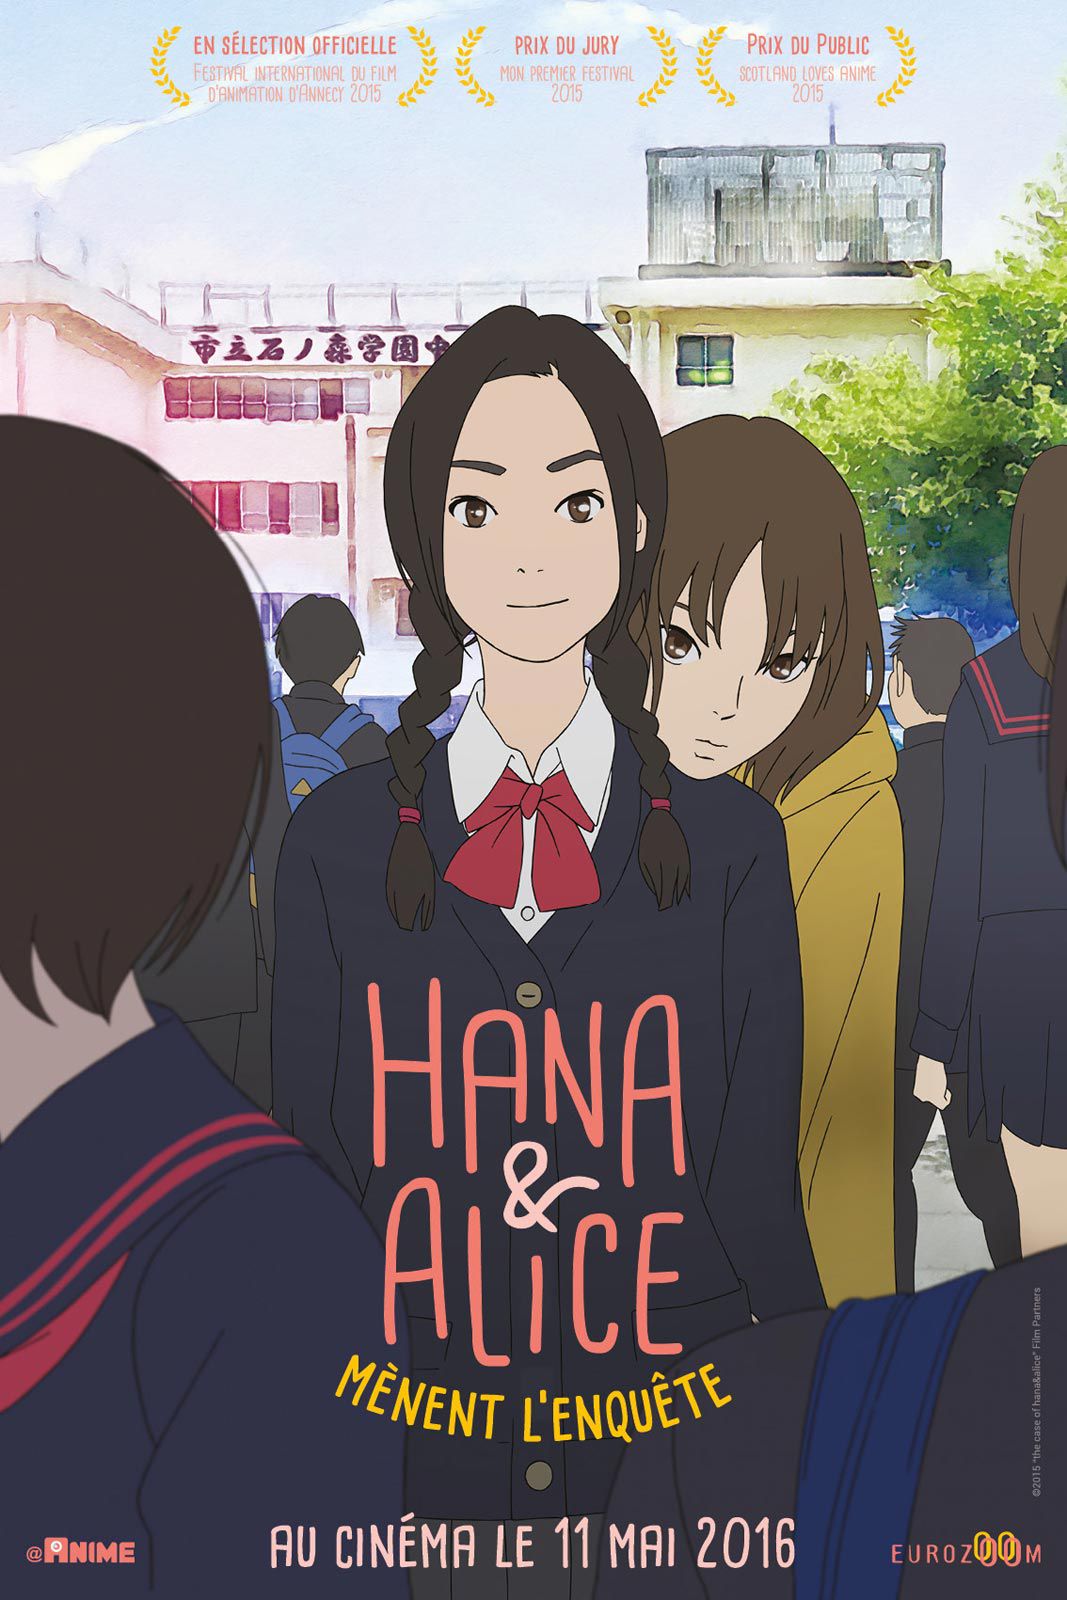 Hana et Alice mènent l'enquête - Long-métrage d'animation (2015) streaming VF gratuit complet